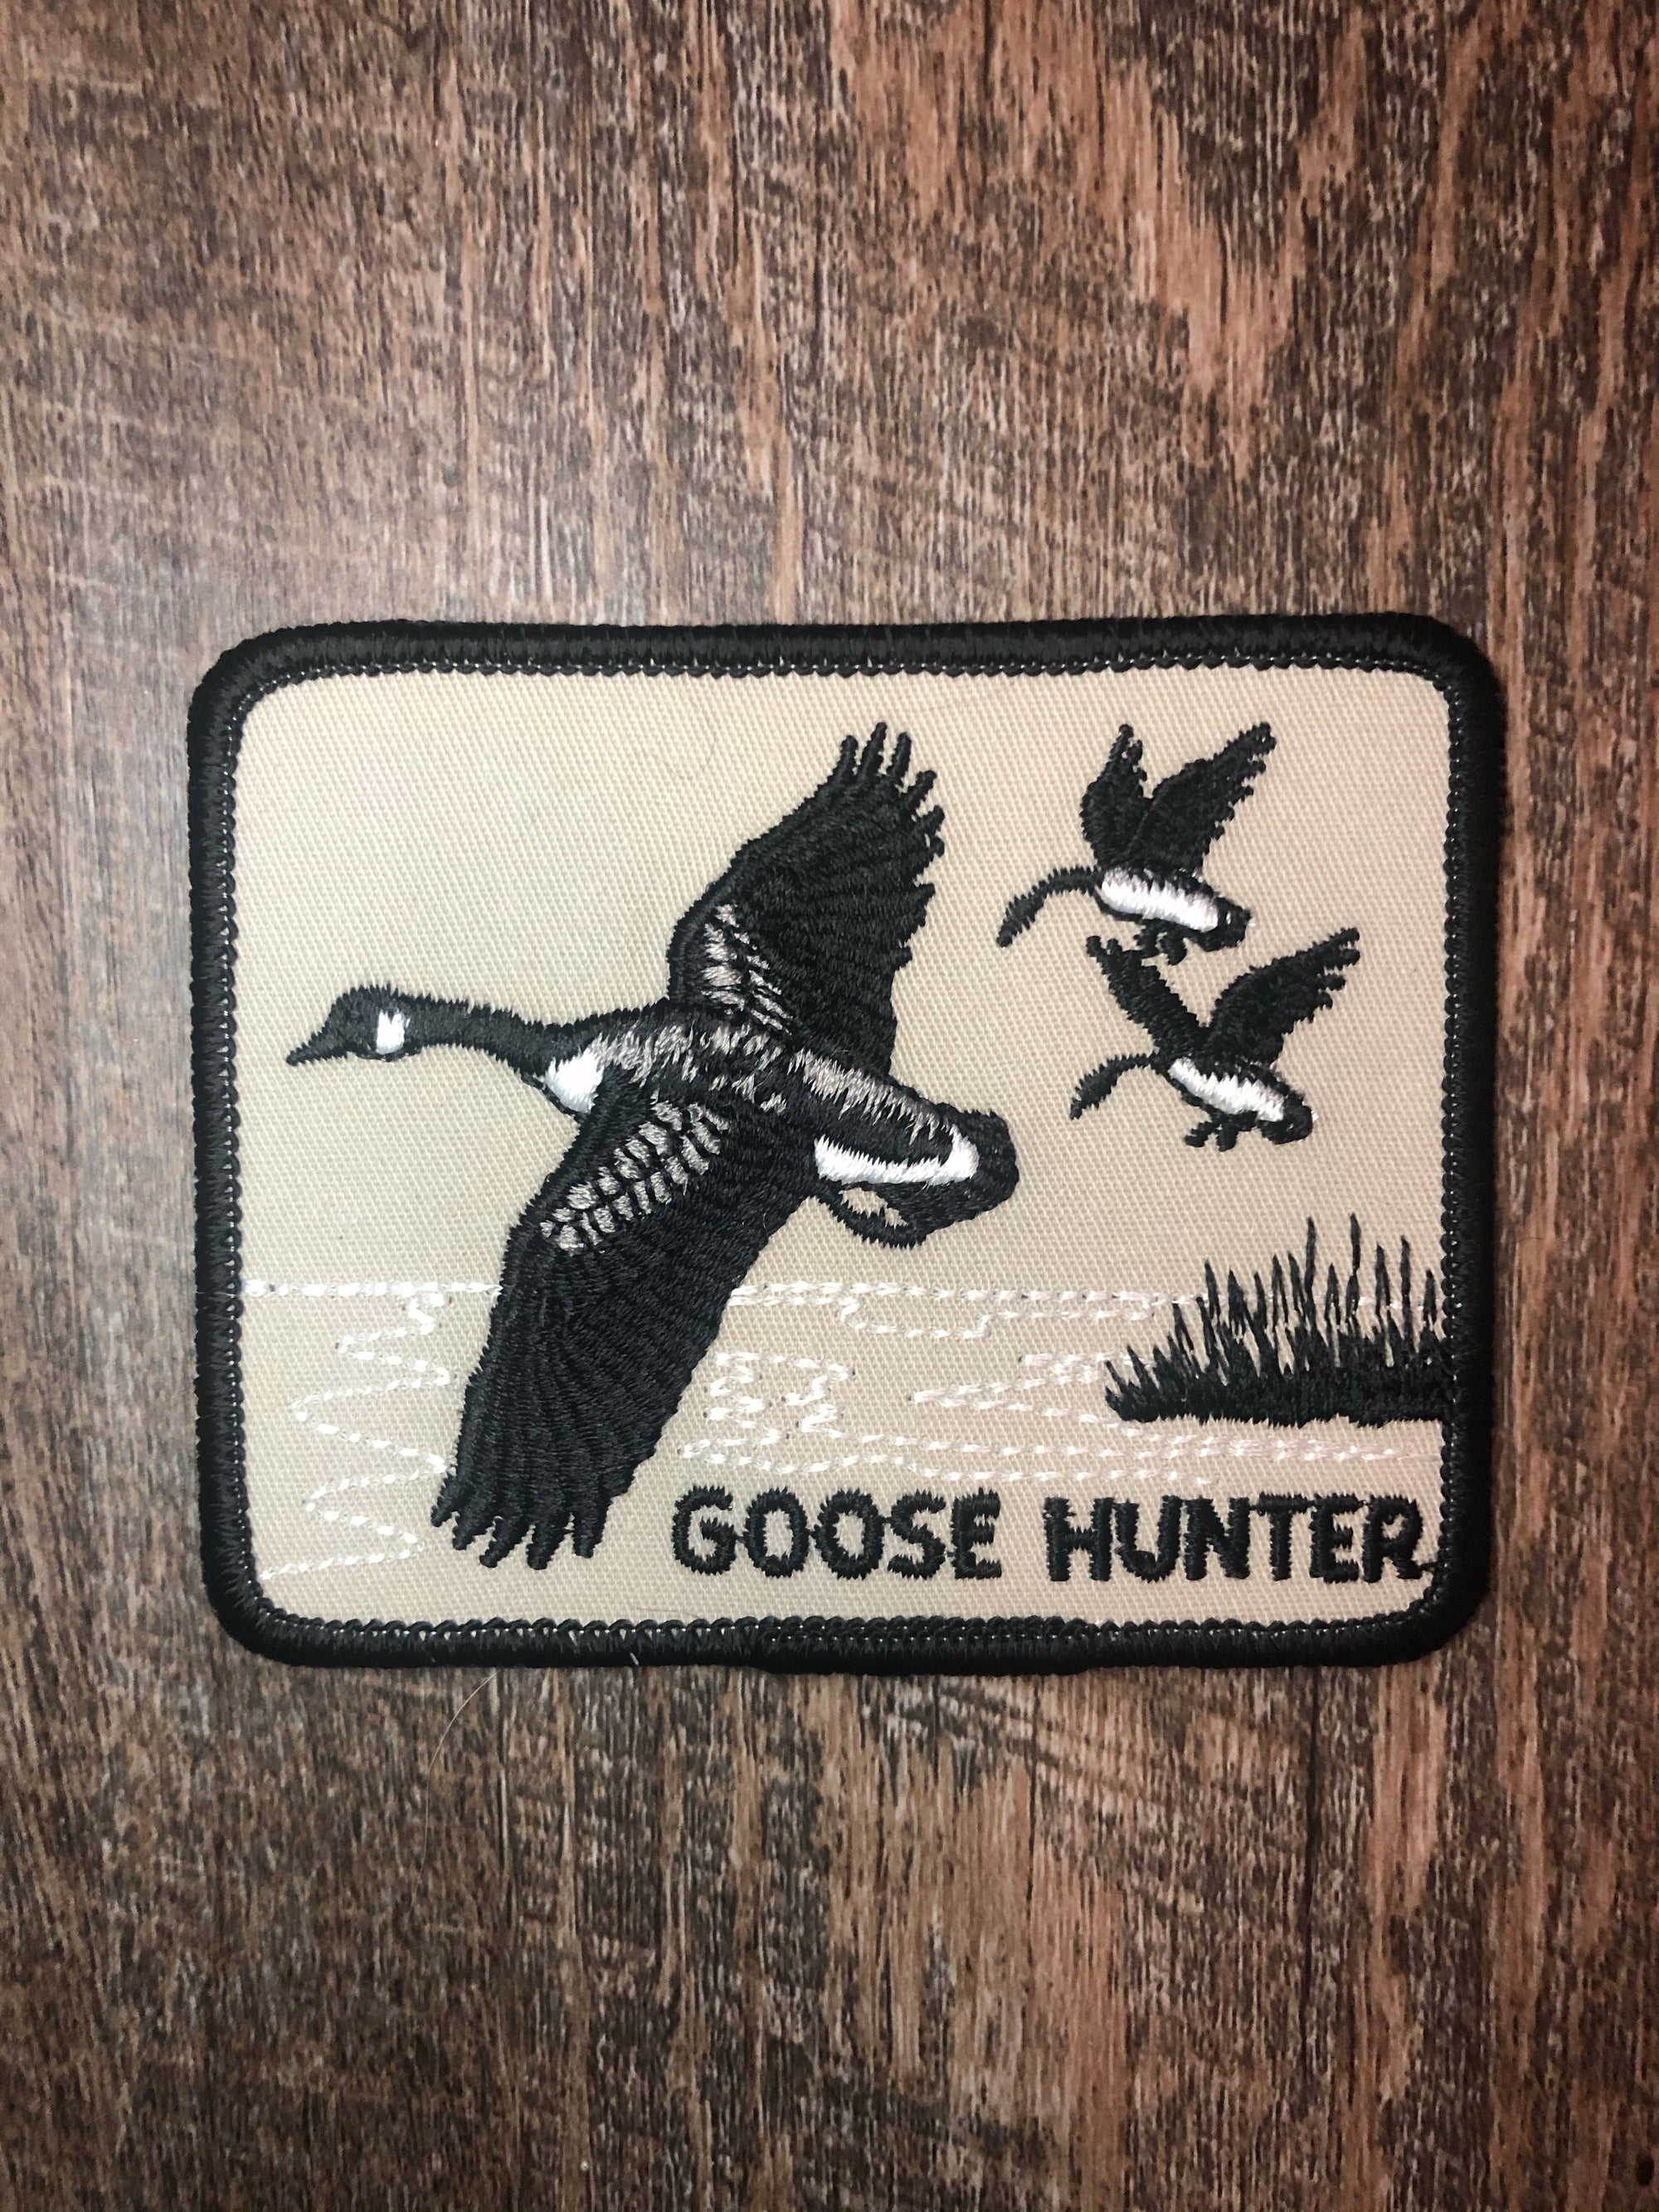 Vintage Goose Hunter